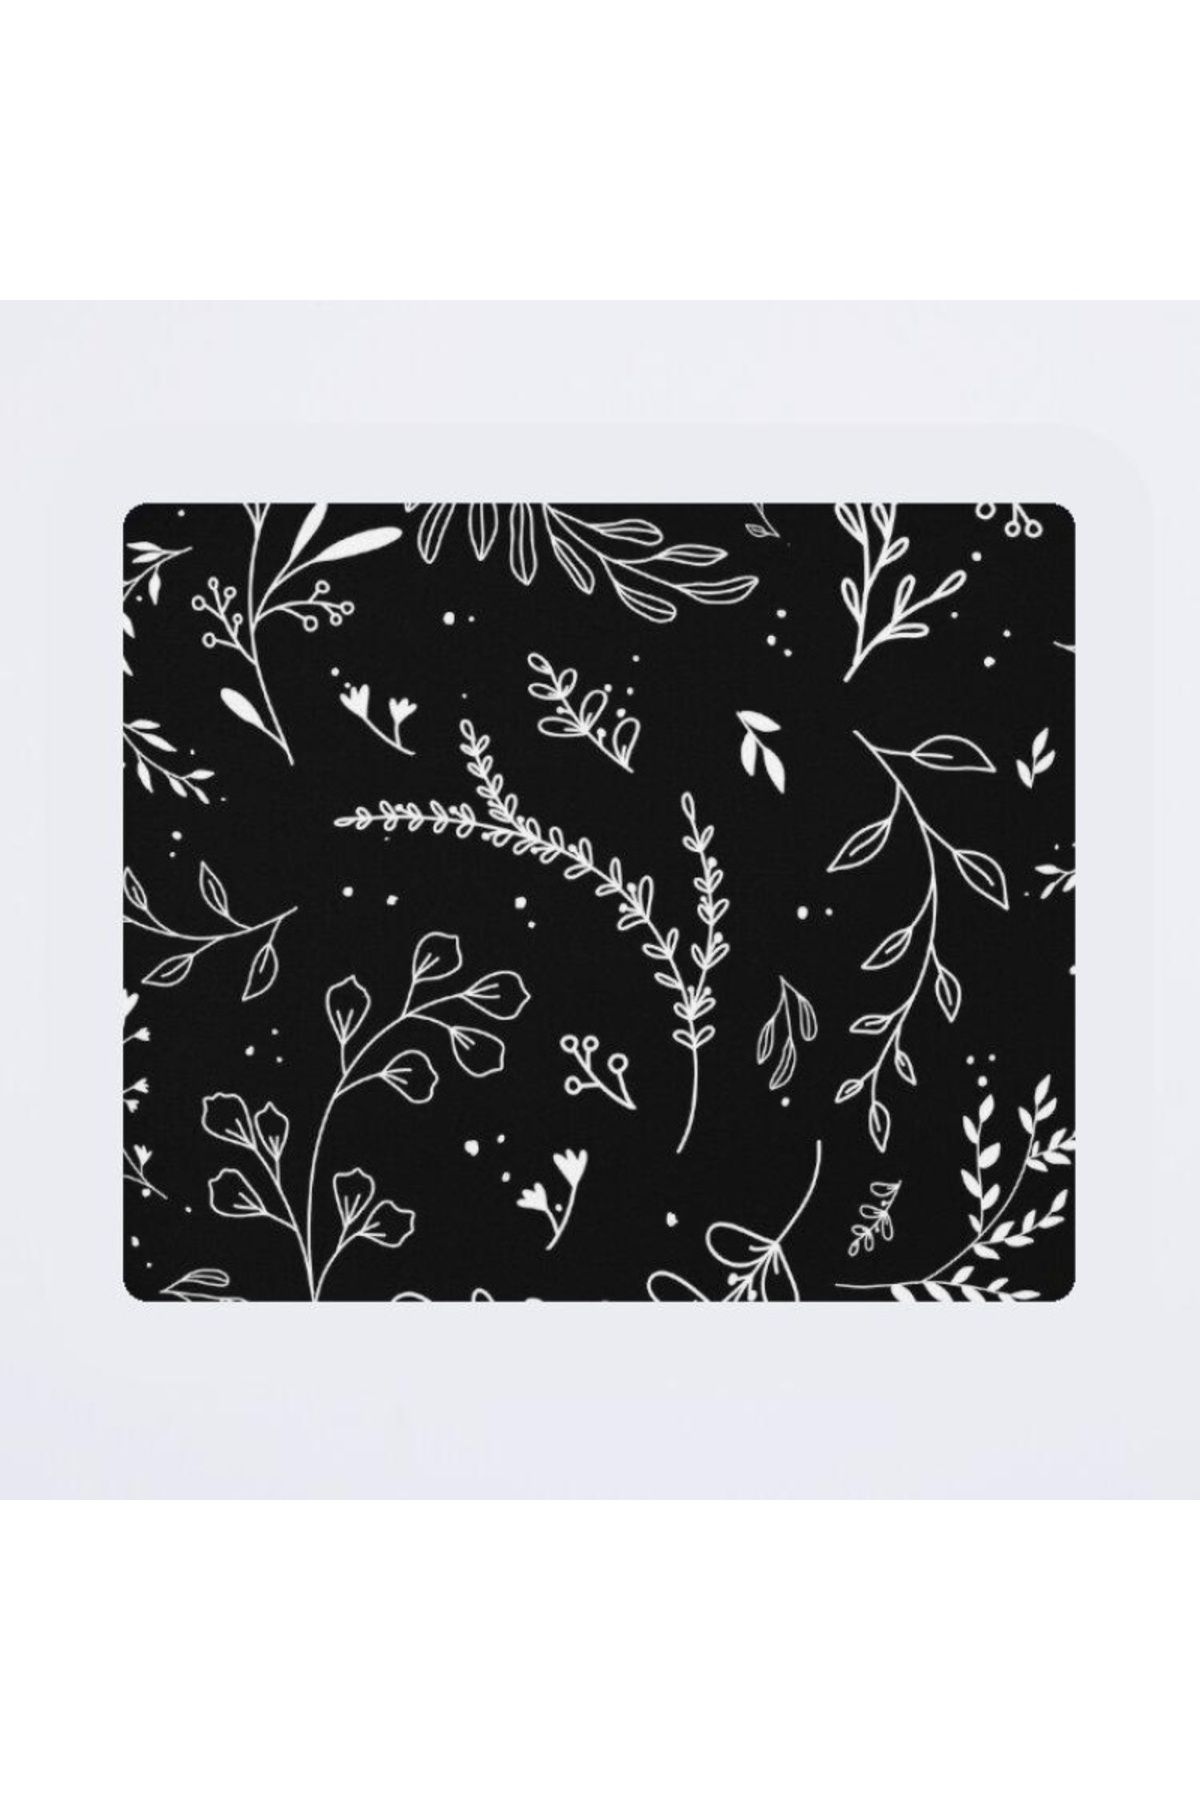 w house Baskılı Mouse pad 000741 18X22/2mm White floral pattern, white botanical print, white floral art